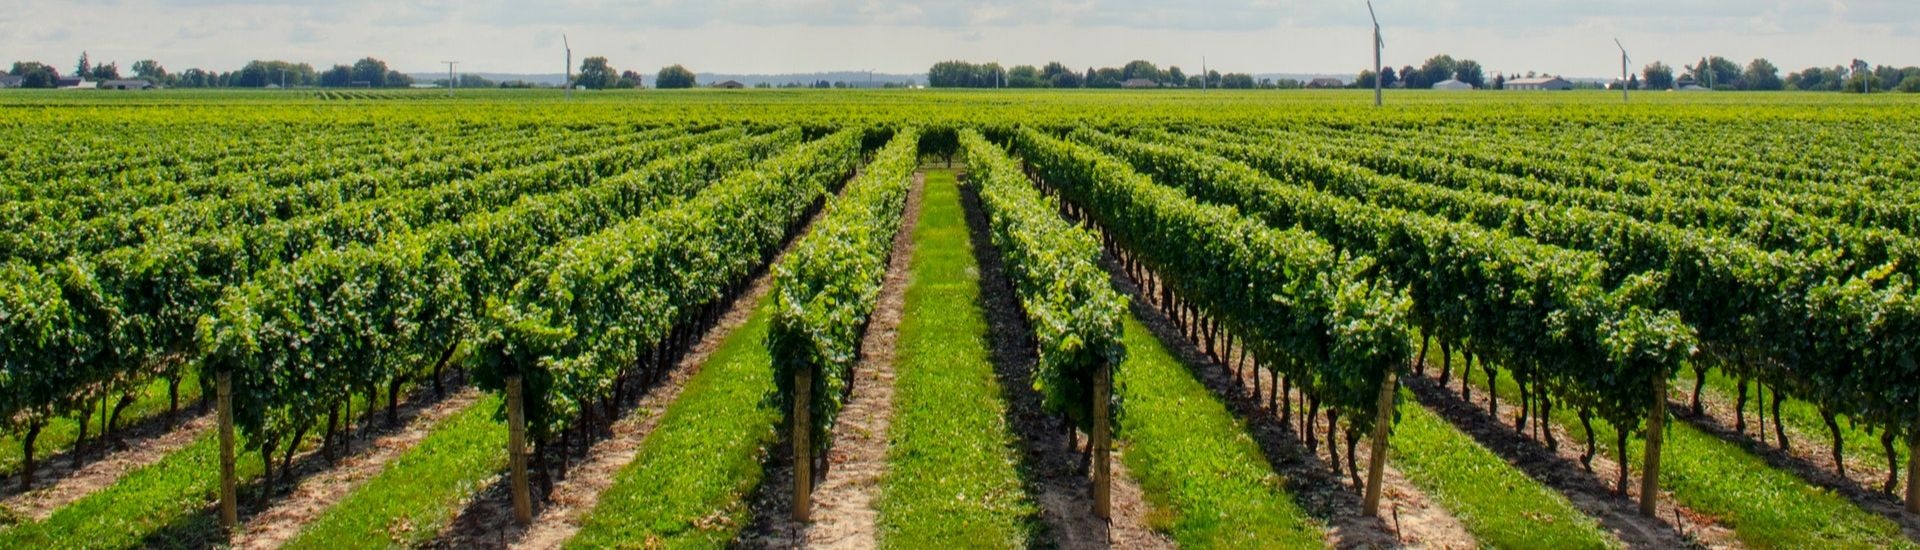 vineyard vines.jpg